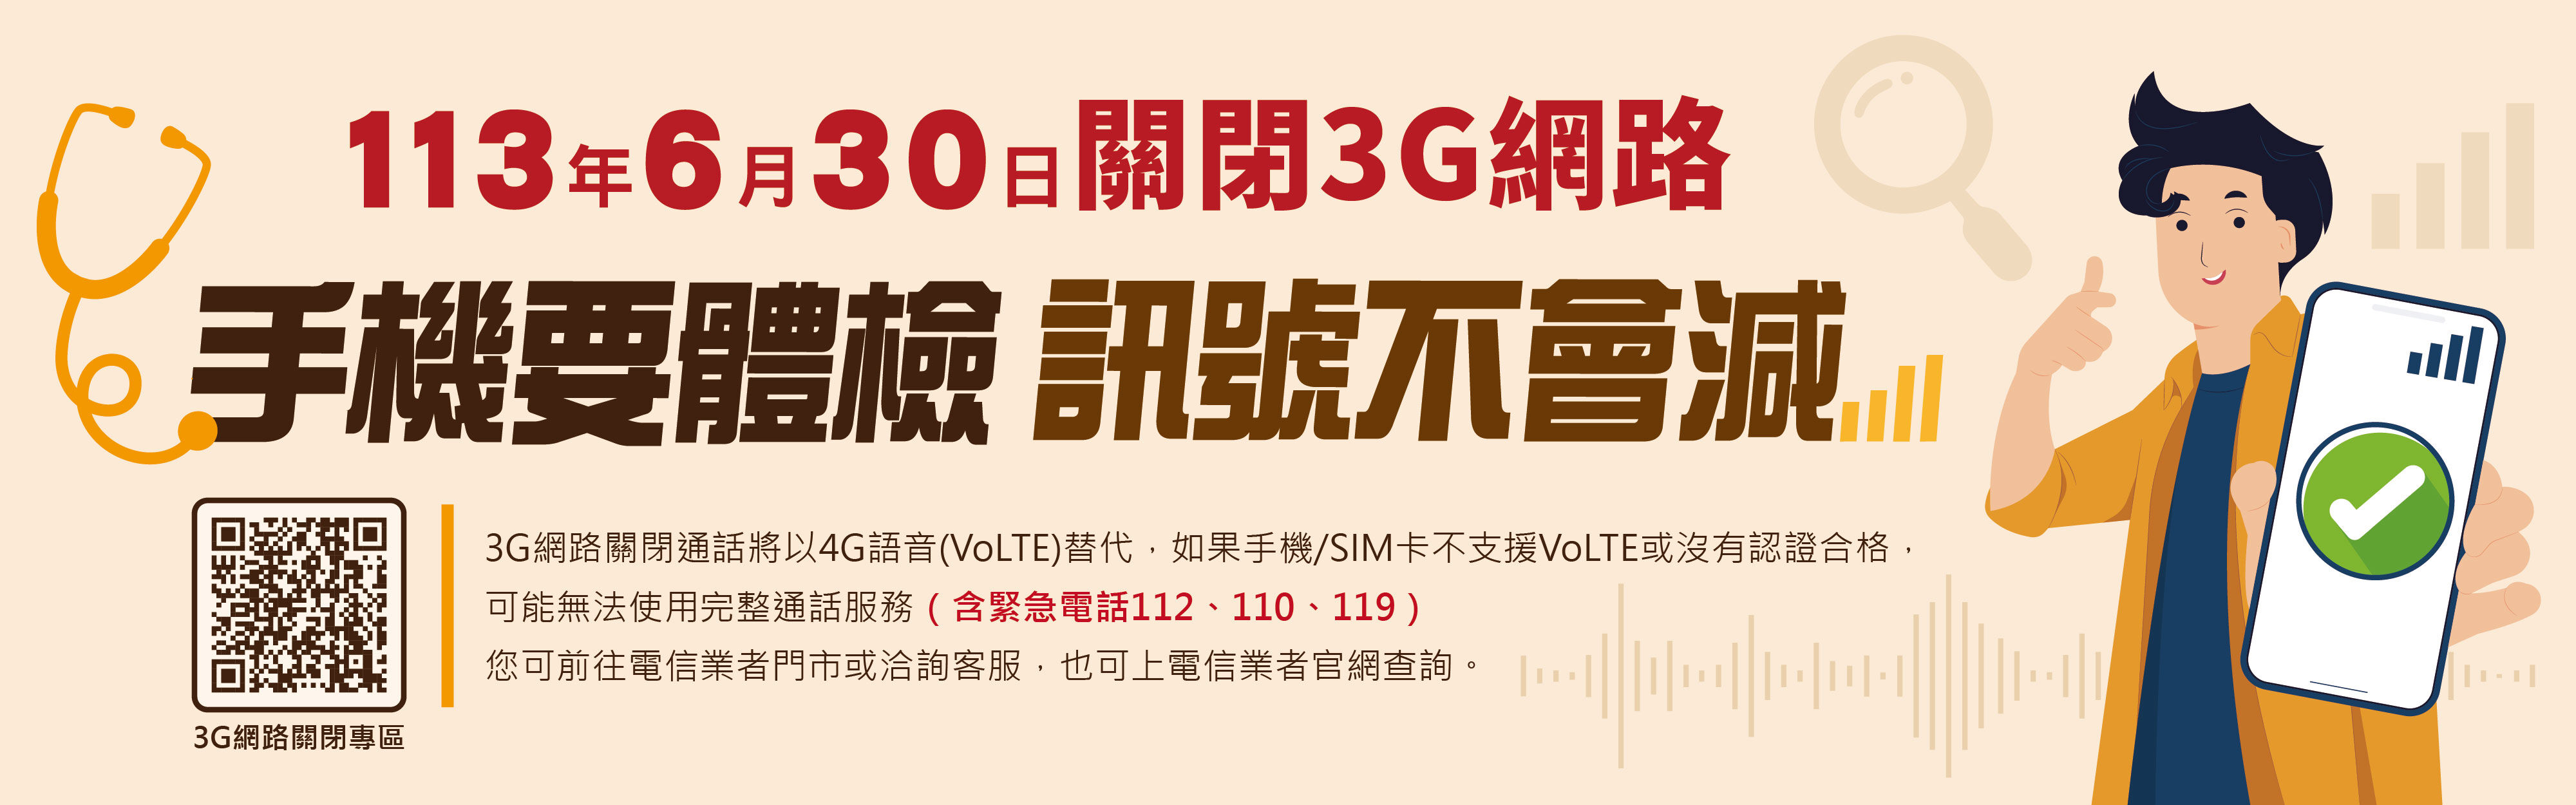 3G網路關閉宣傳海報2.jpg